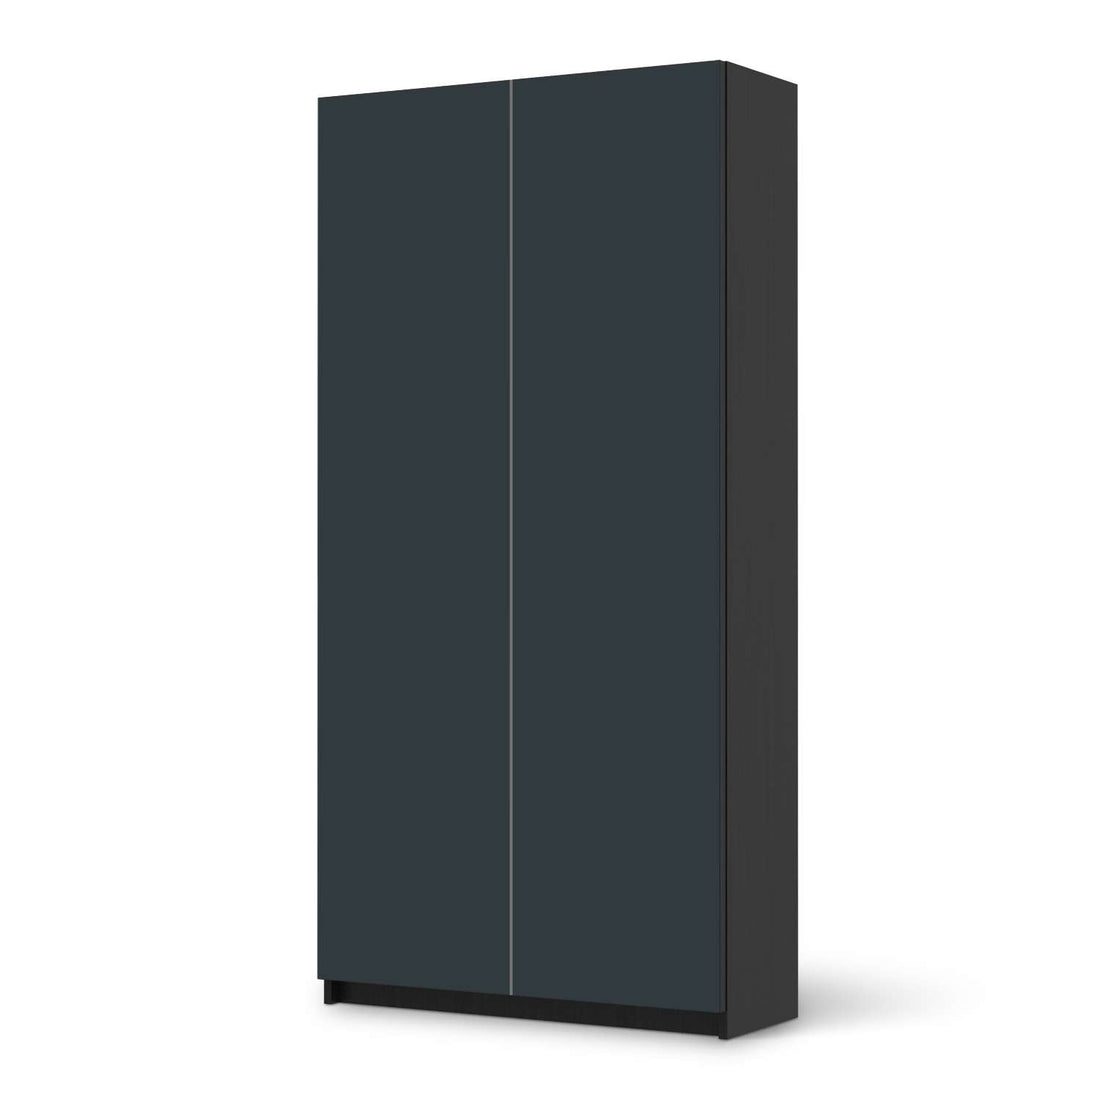 Klebefolie für Möbel Blaugrau Dark - IKEA Pax Schrank 201 cm Höhe - 2 Türen - schwarz